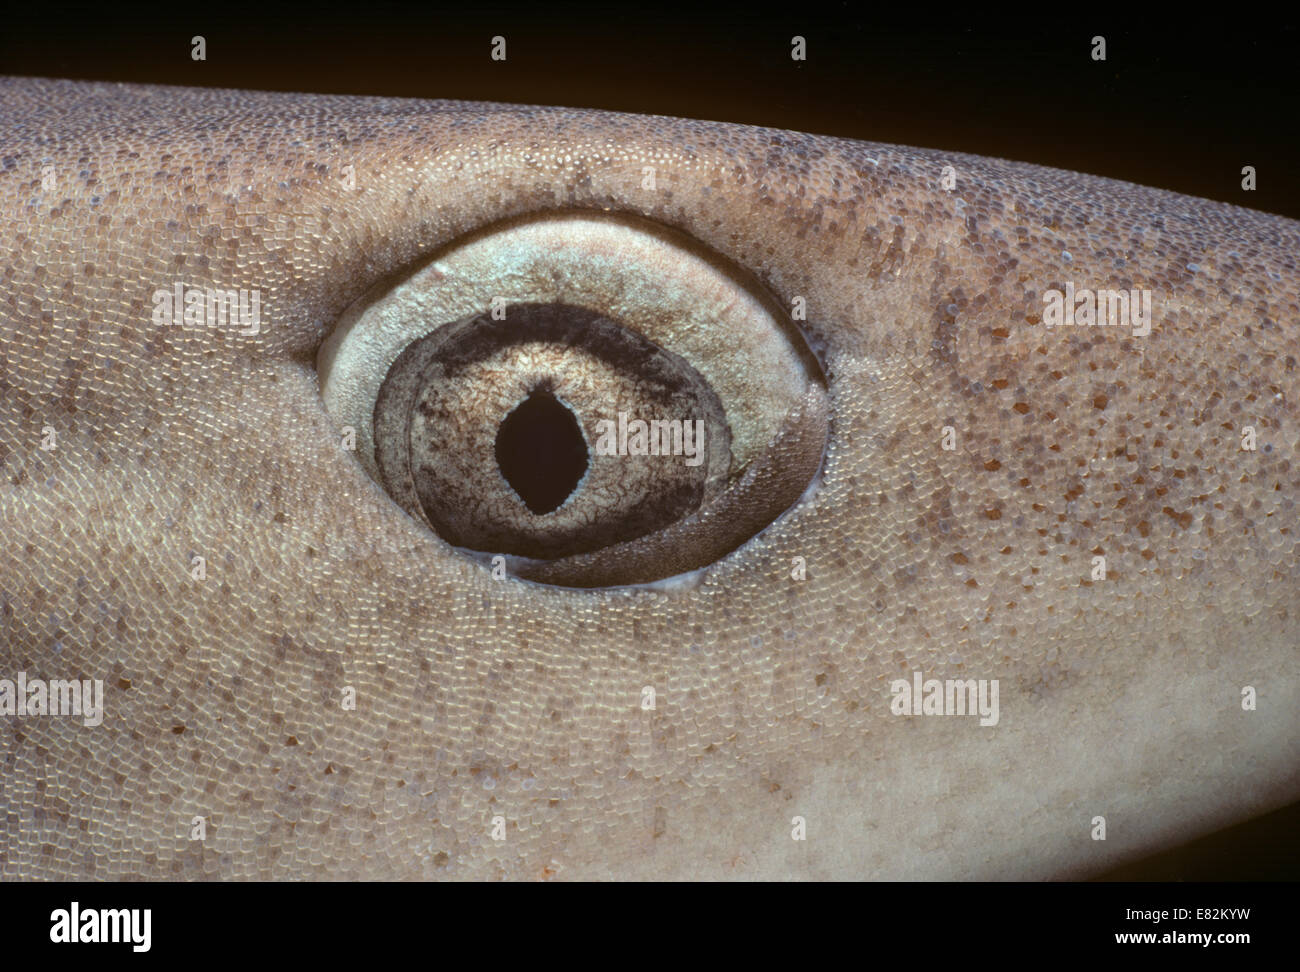 Occhio di Whitetip Reef Shark (Triaenodon obesus), membrana nictitating chiusura per proteggere l'occhio. Cocos Island, Costa Rica, Pacific Foto Stock